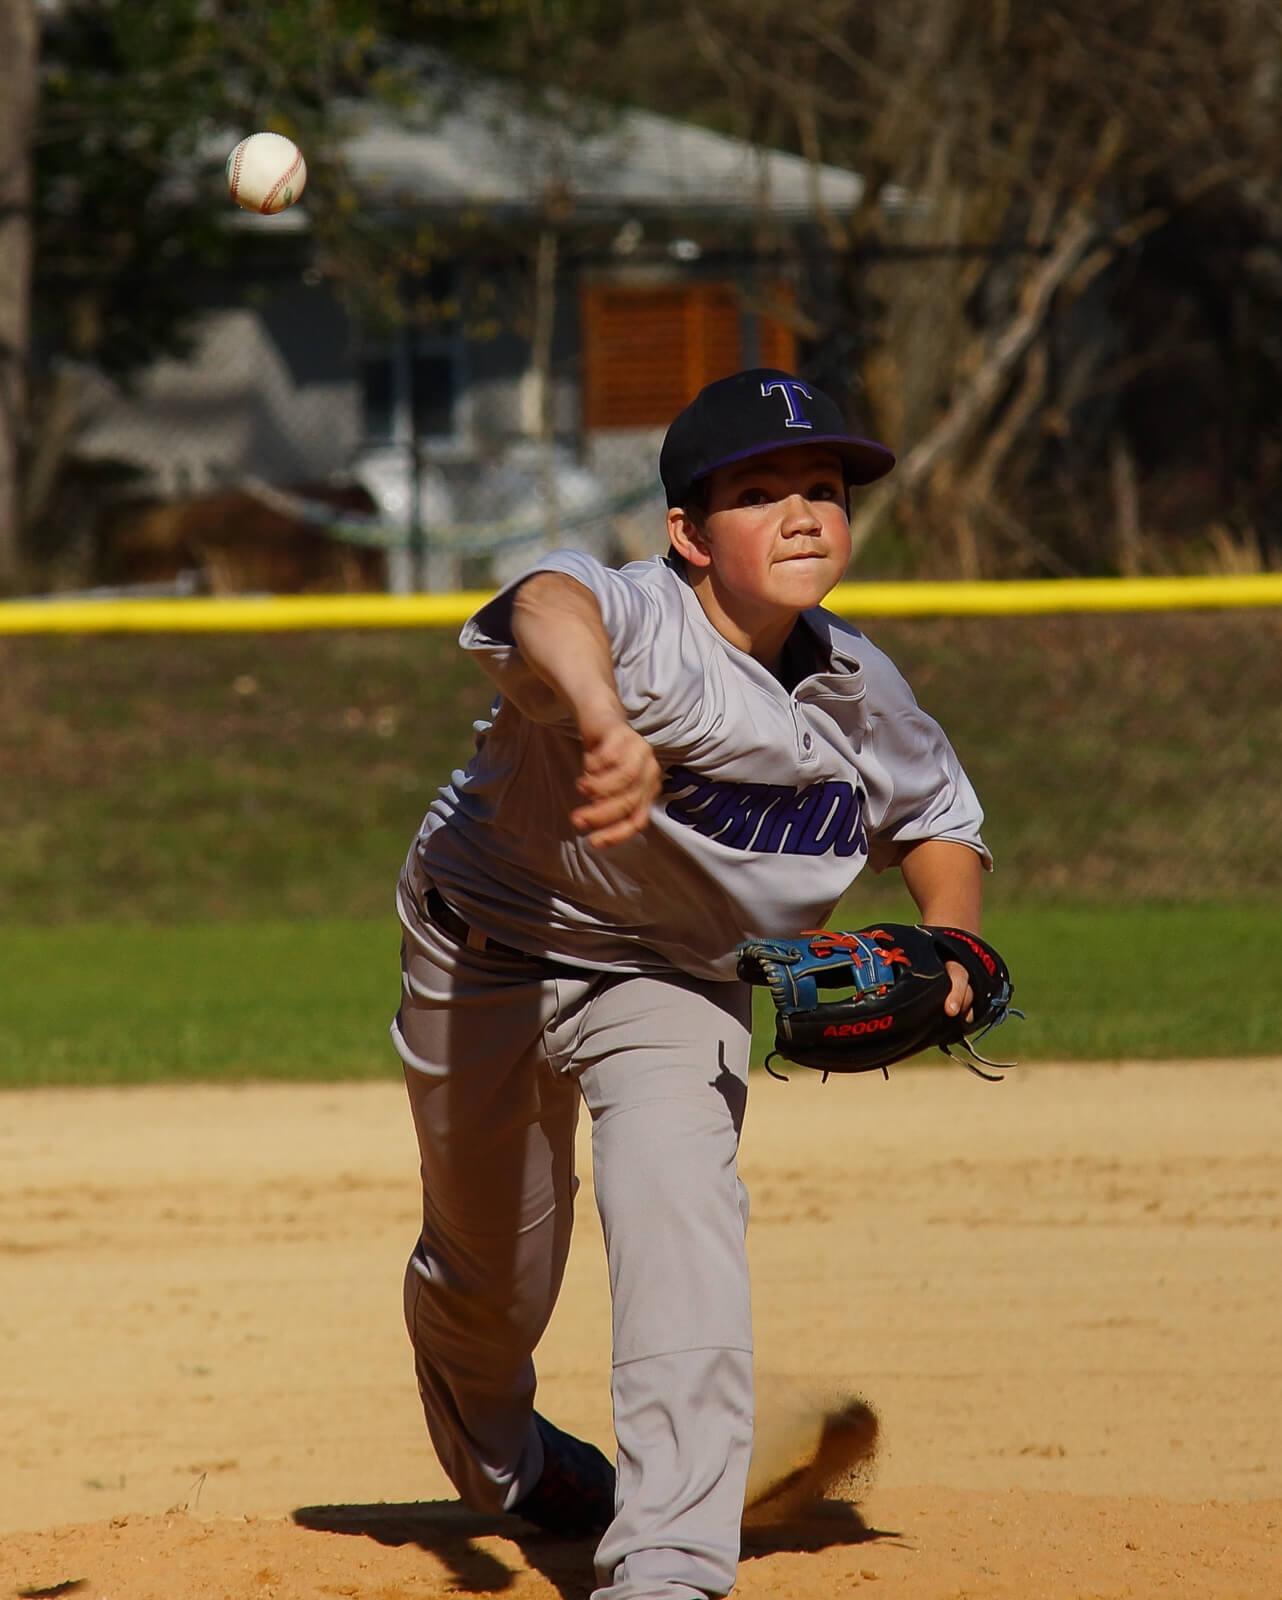 Player pitching baseball